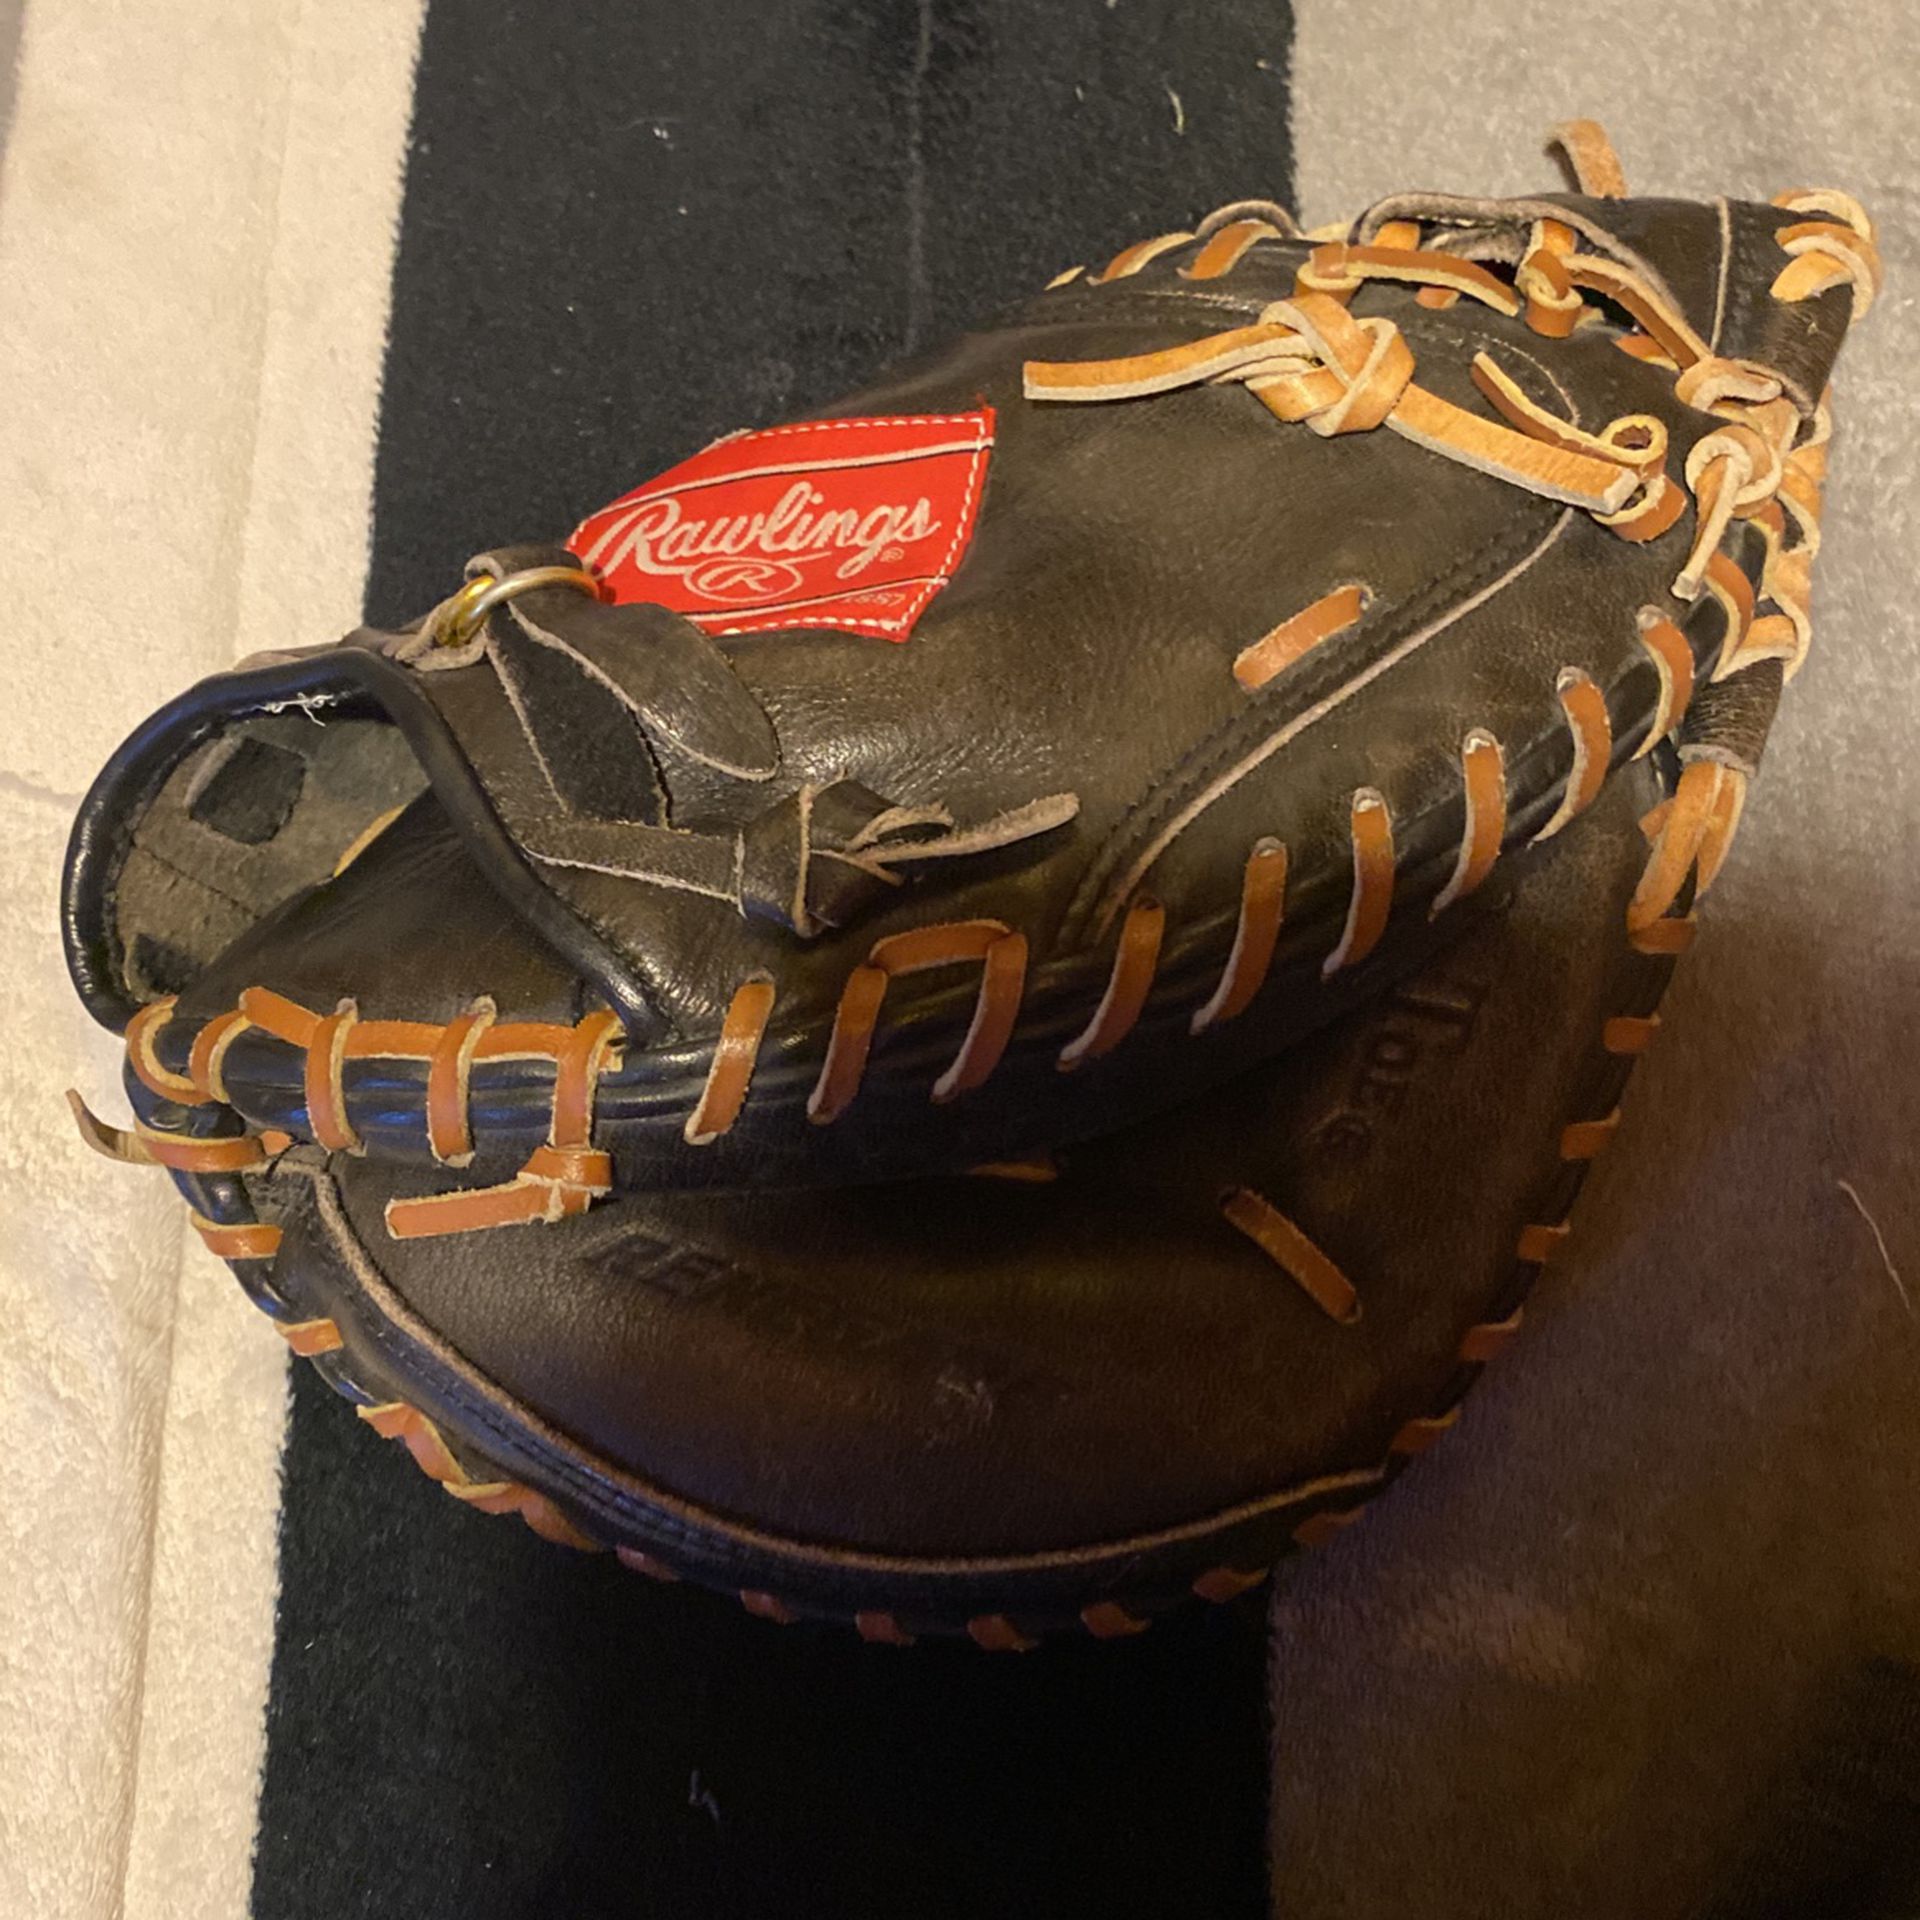 Rawlings Catchers baseball glove